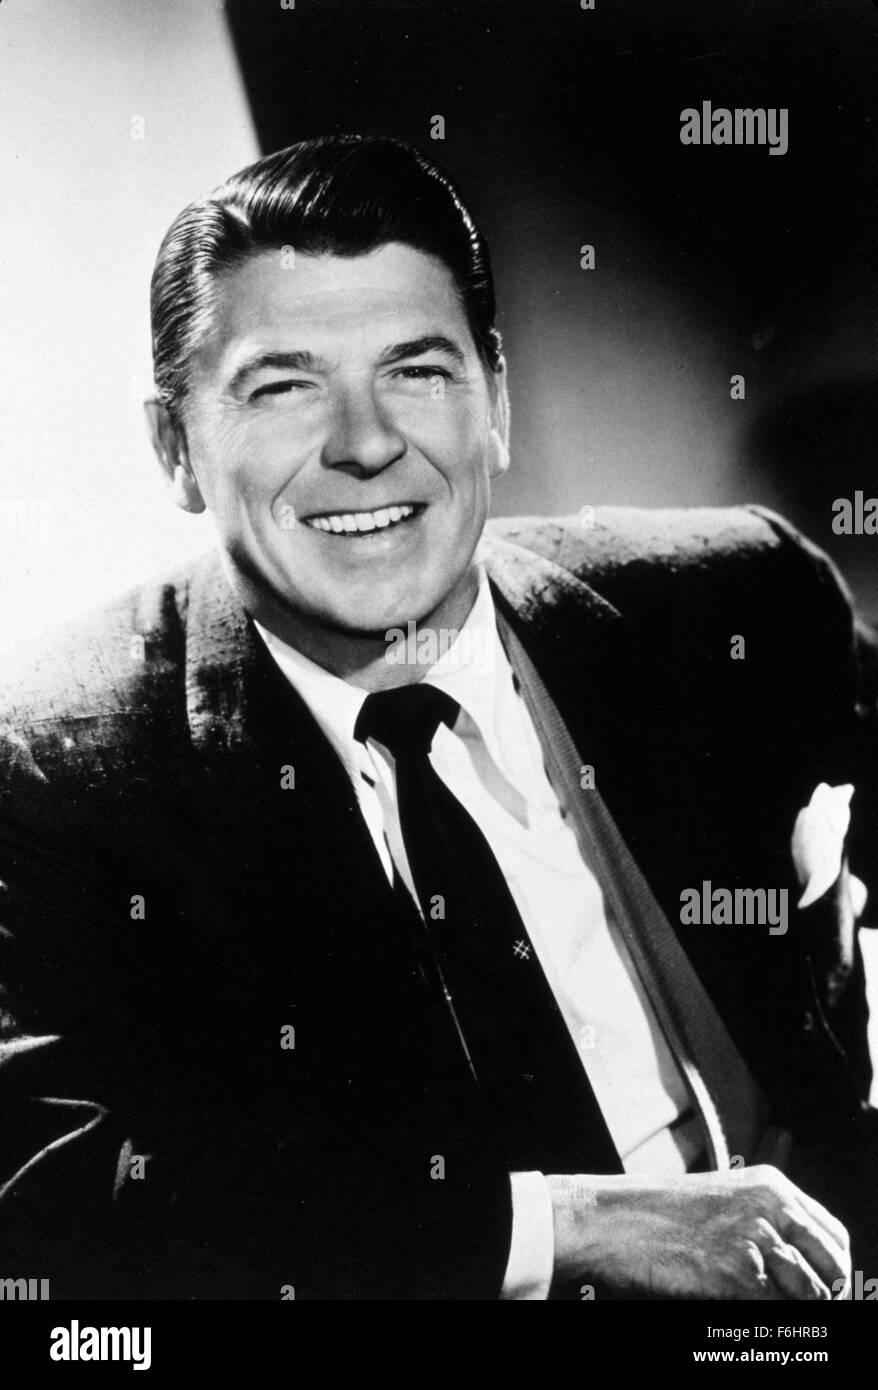 1958, le titre du film : GENERAL ELECTRIC THEATRE, Studio : CBS, Photo : Ronald Reagan, poursuite, riant, se penchant, PORTRAIT. (Crédit Image : SNAP) Banque D'Images